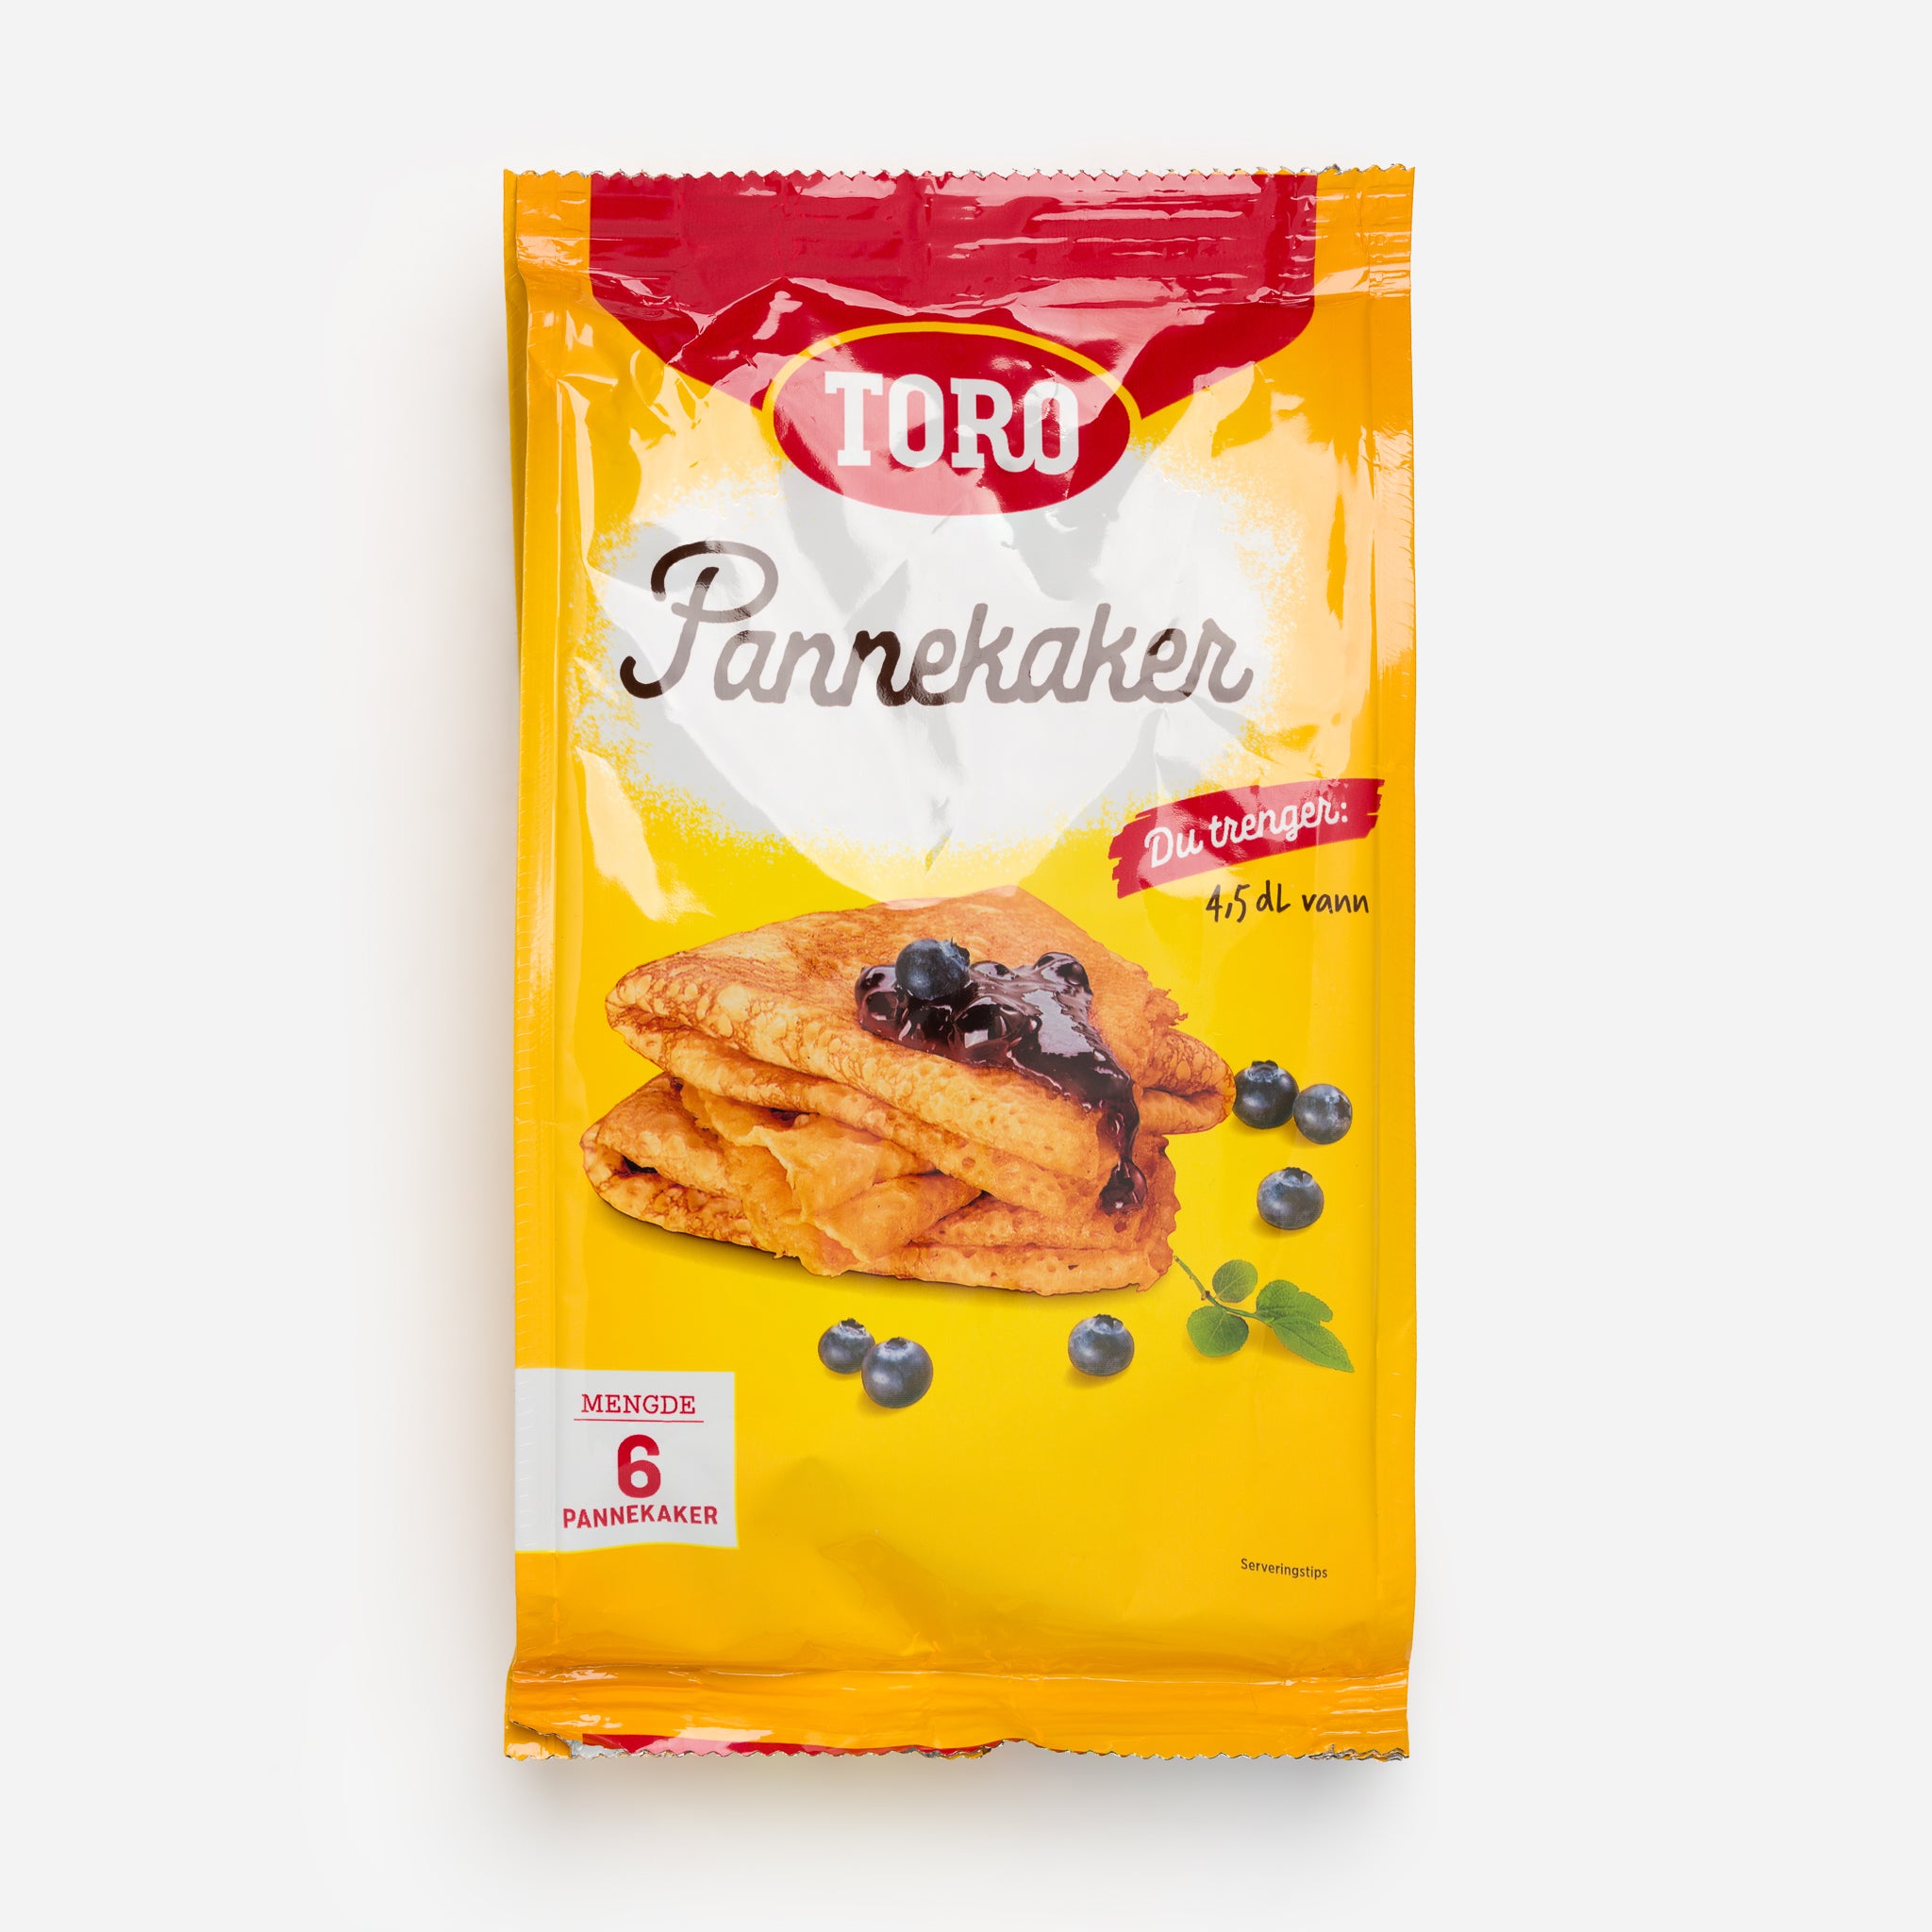 Pannekaker (Pancakes) - Toro Mix